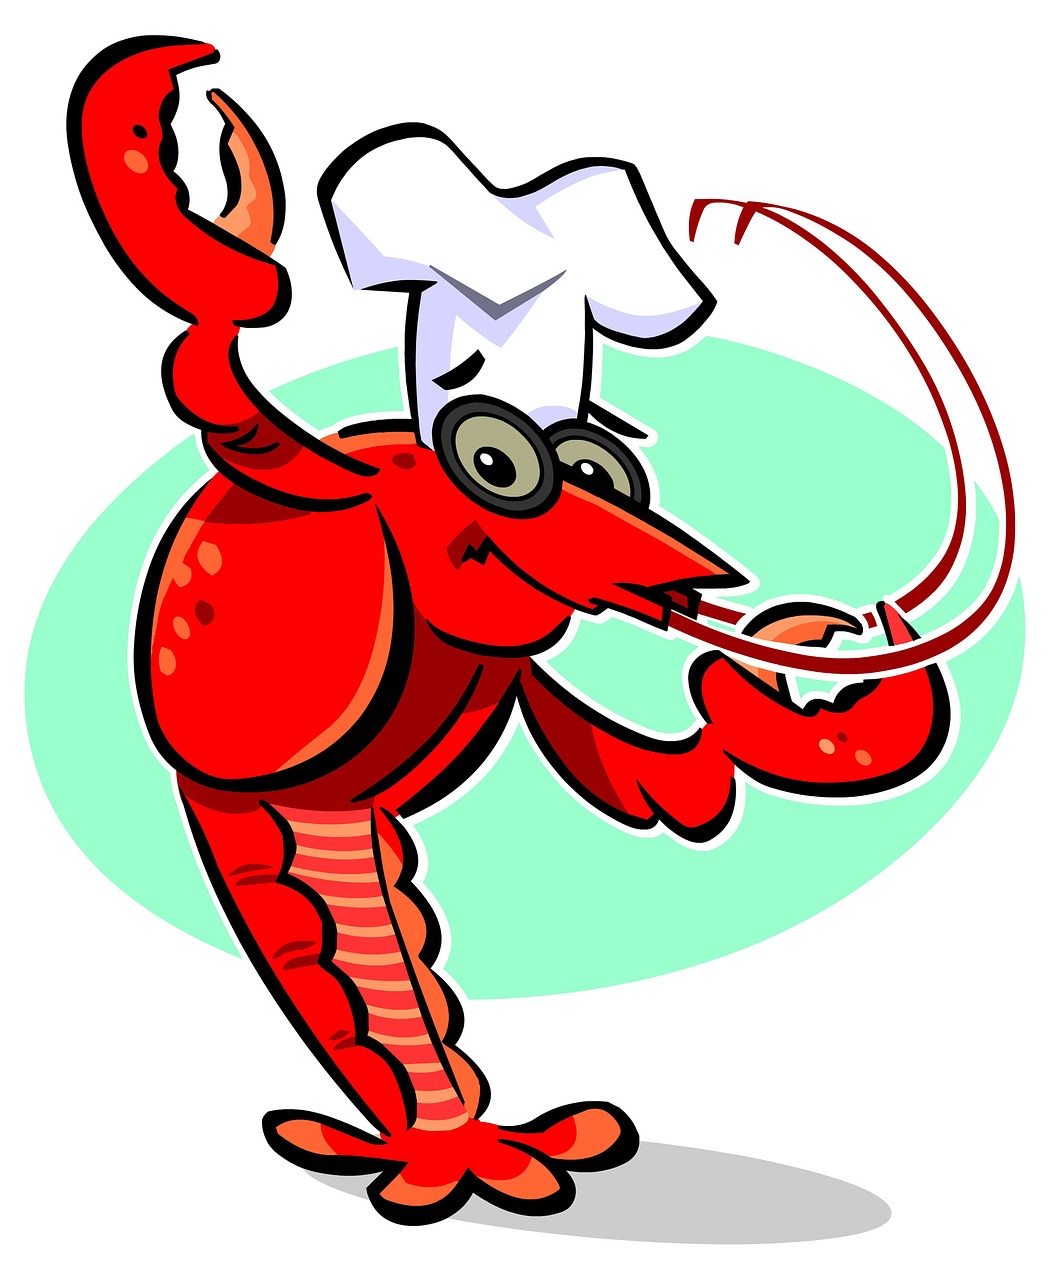 crawfish chef cook crawfish free photo